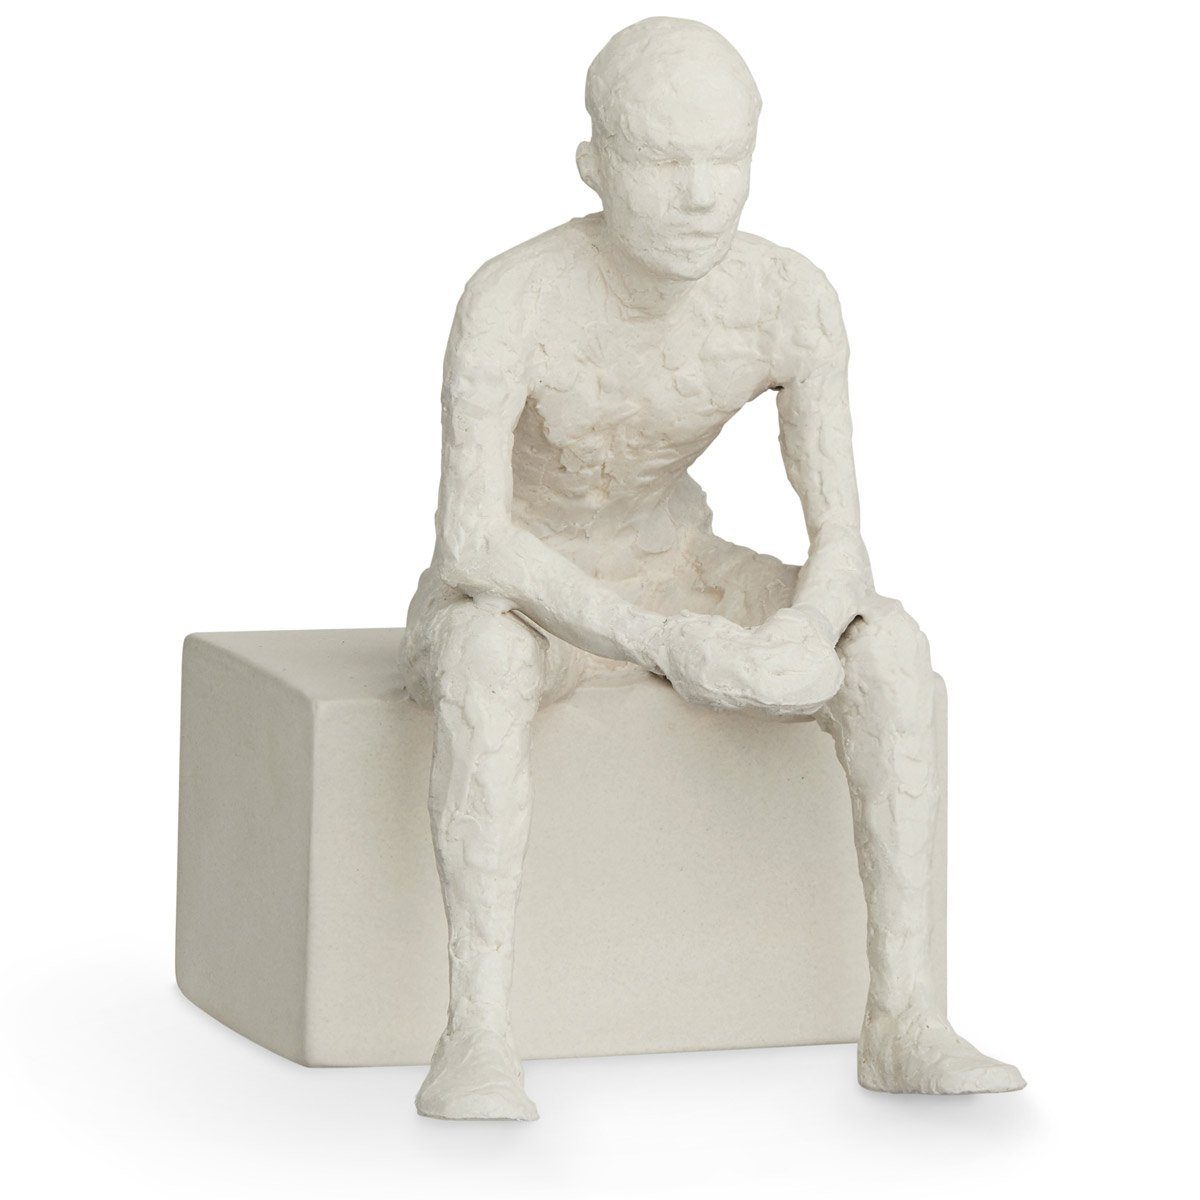 One der Kähler 'Character' The (Der Dekofigur Nachdenkliche); Keramik Bjelke Reflective Malene von Bildhauerin Serie Skulptur aus